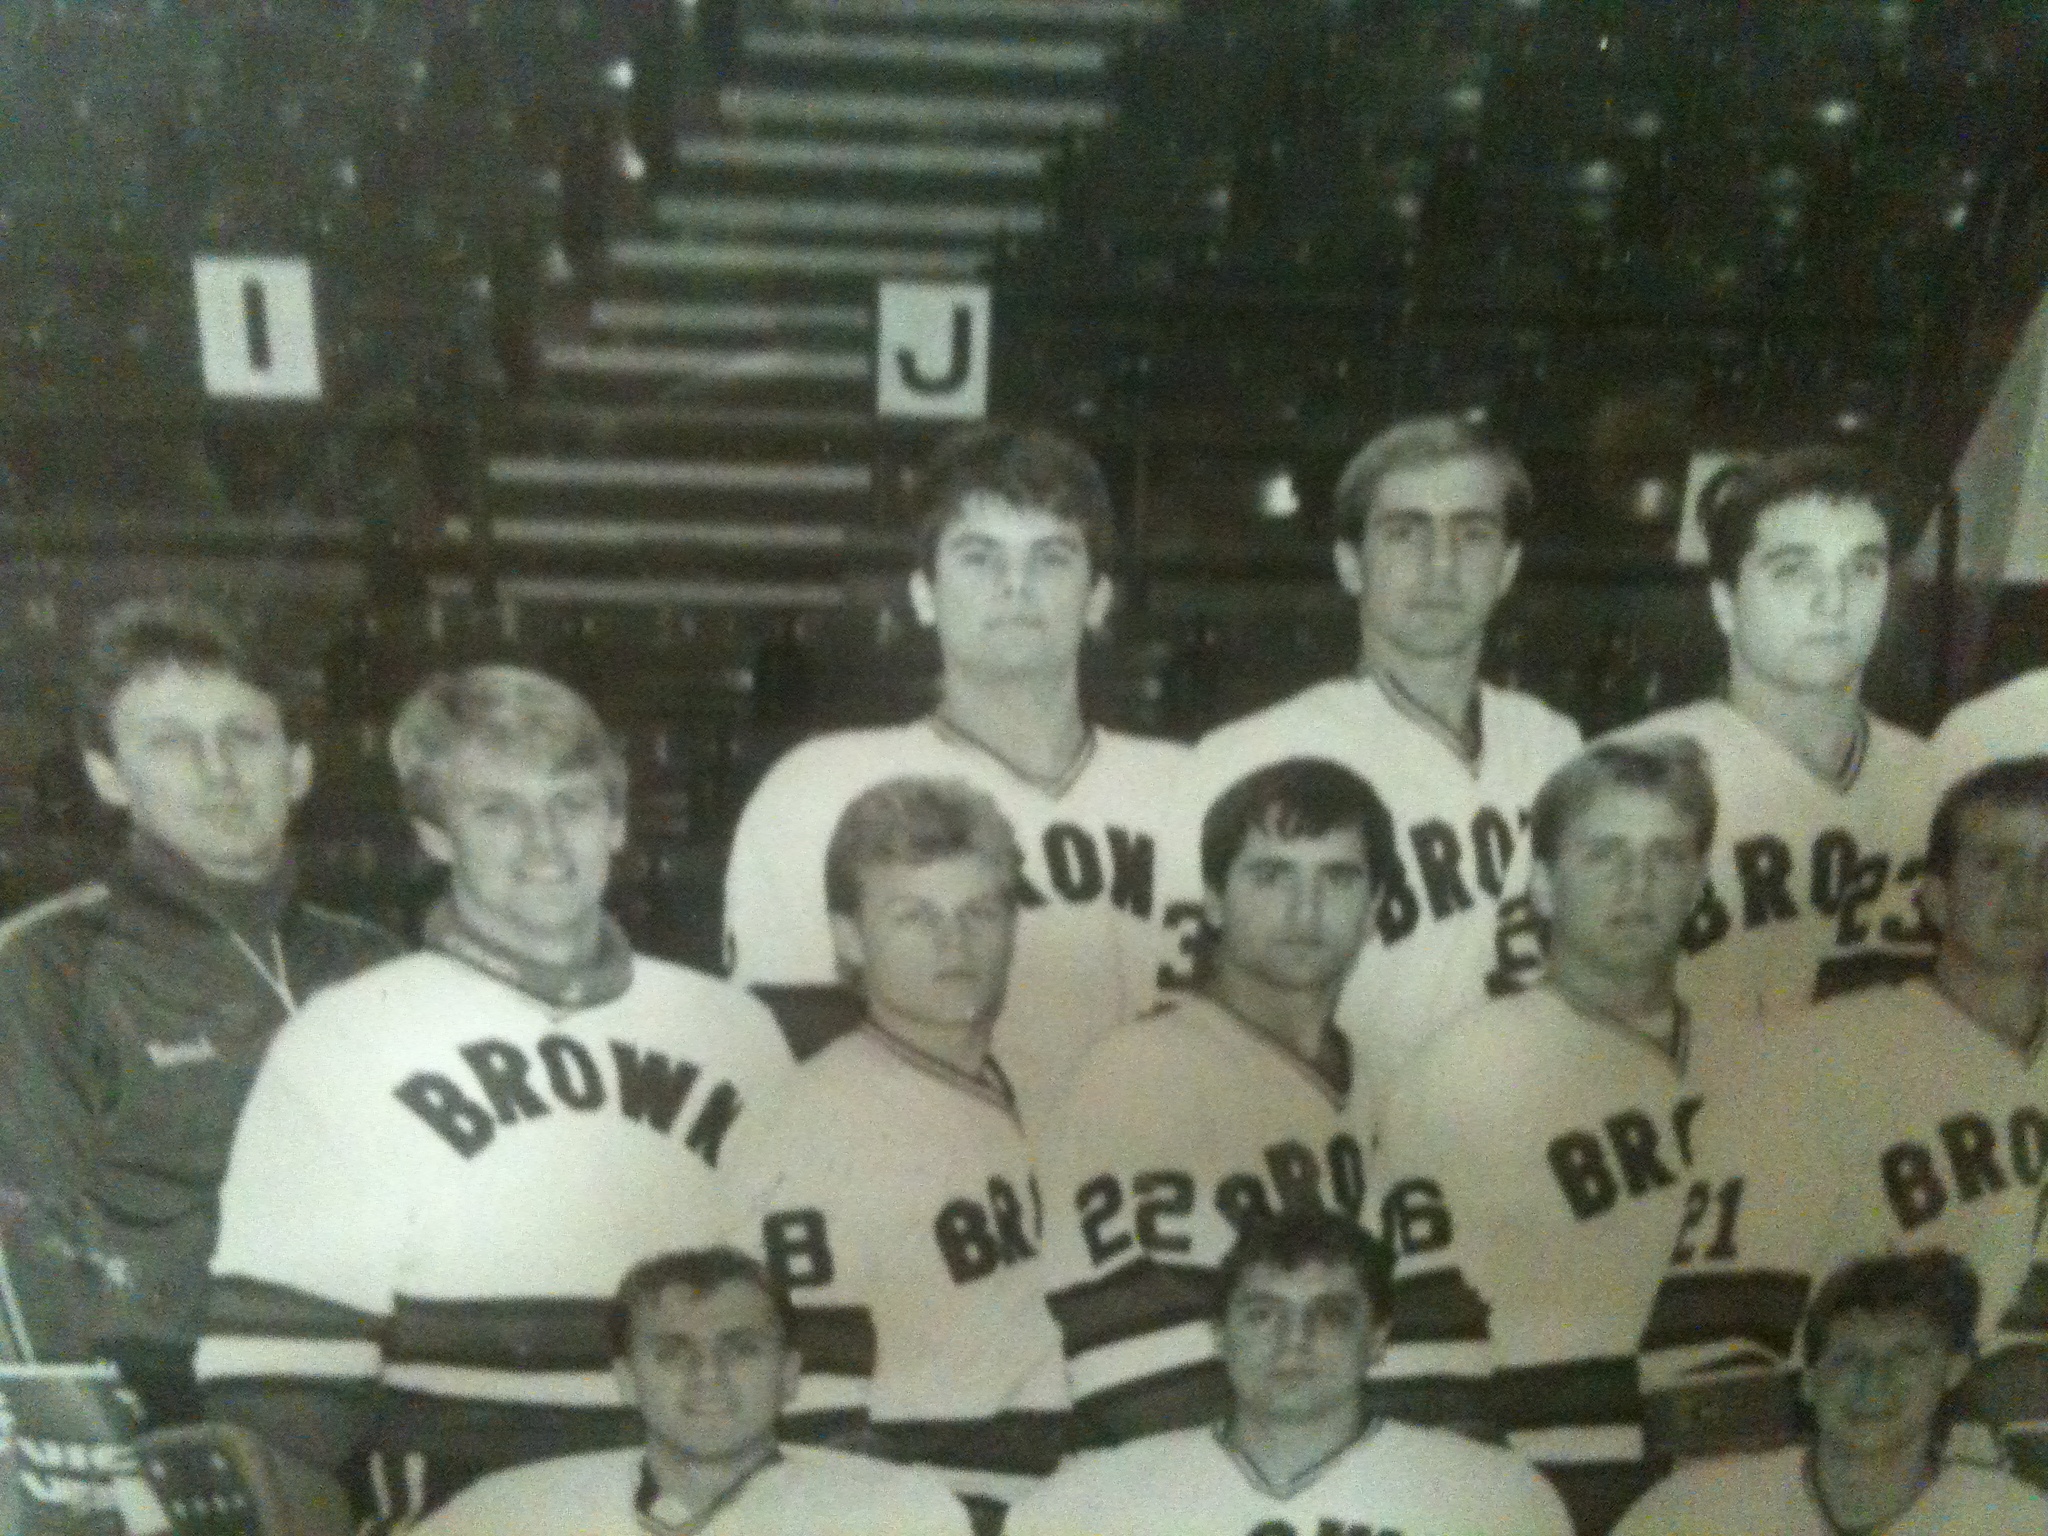 Tom as member of Brown University Hockey Team, '87-'88